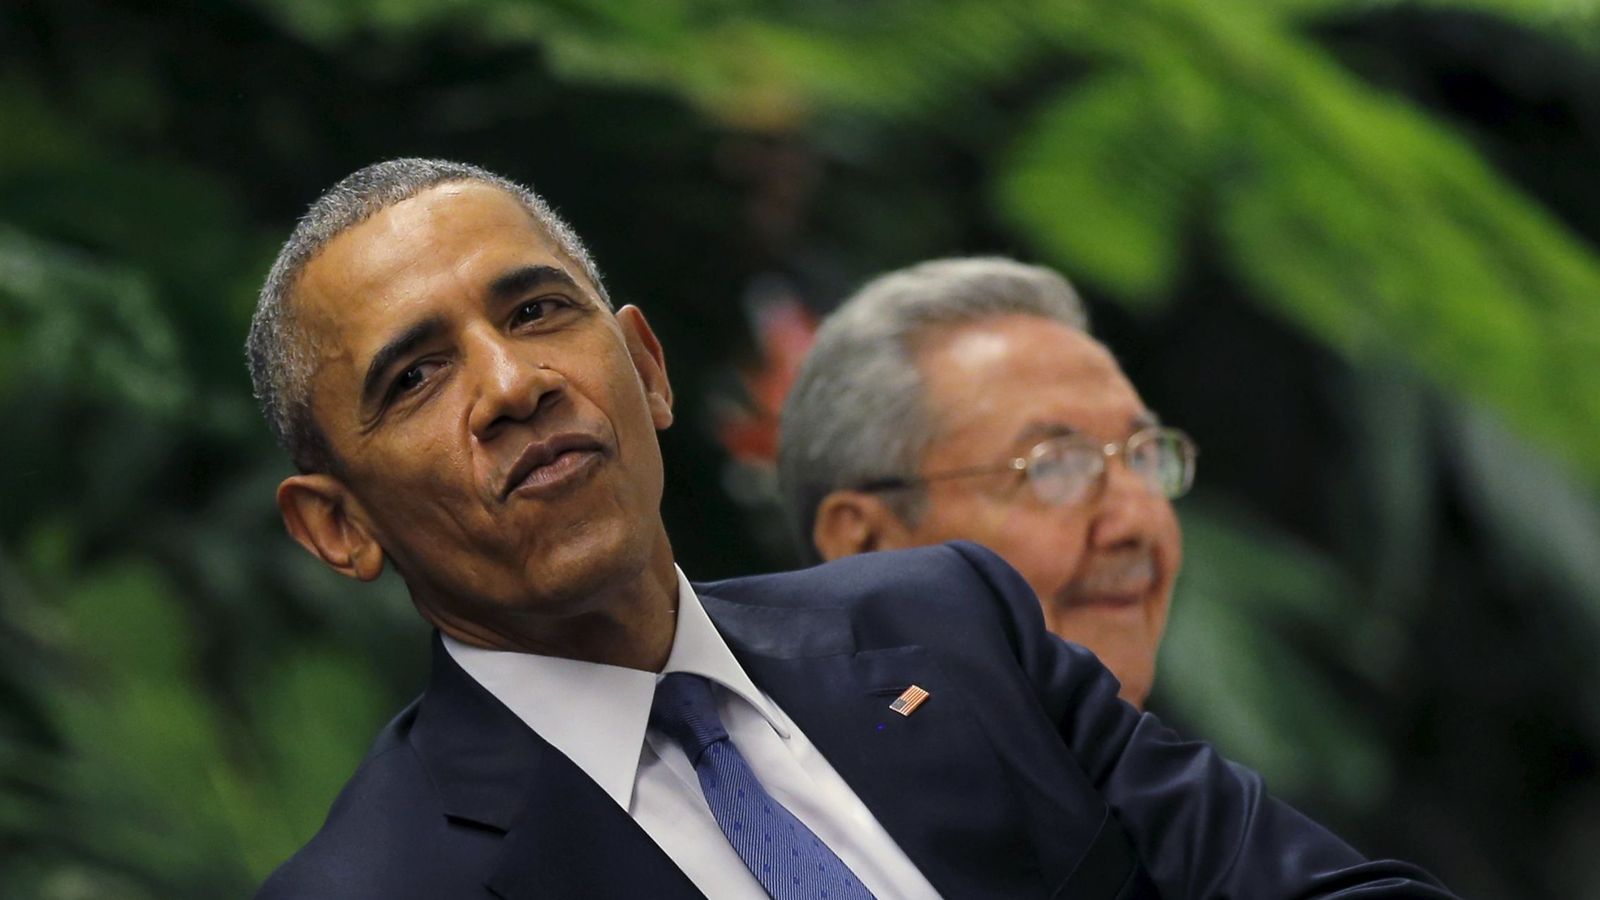 Foto: Barack Obama y Raul Castro durante la visita del presidente de Estados Unidos a Cuba. (Reuters)